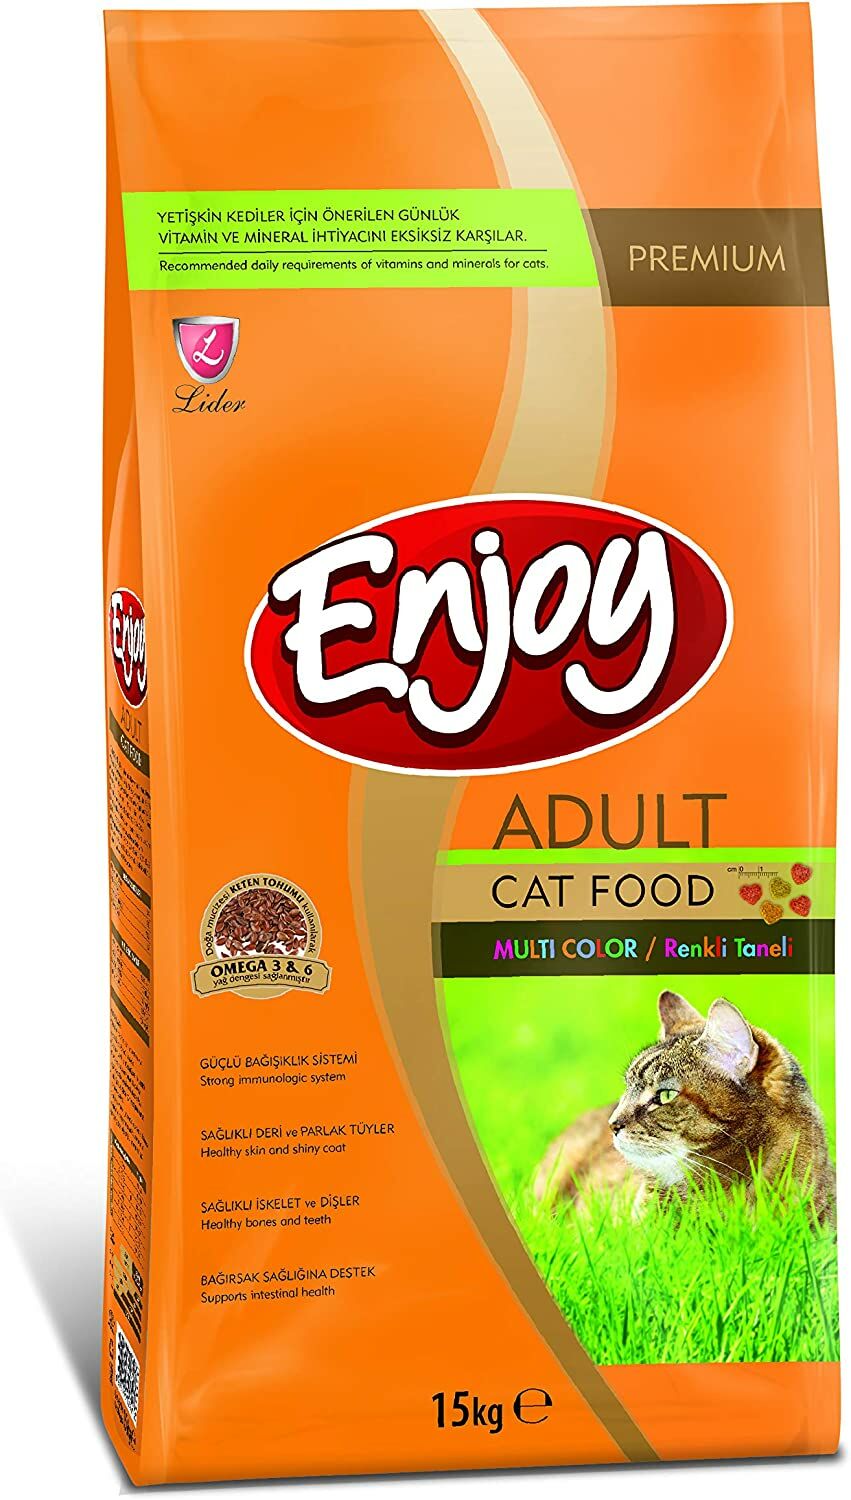 Enjoy Premium Multicolor Tavuklu Yetişkin Kedi Maması 15 KG ENJ-07